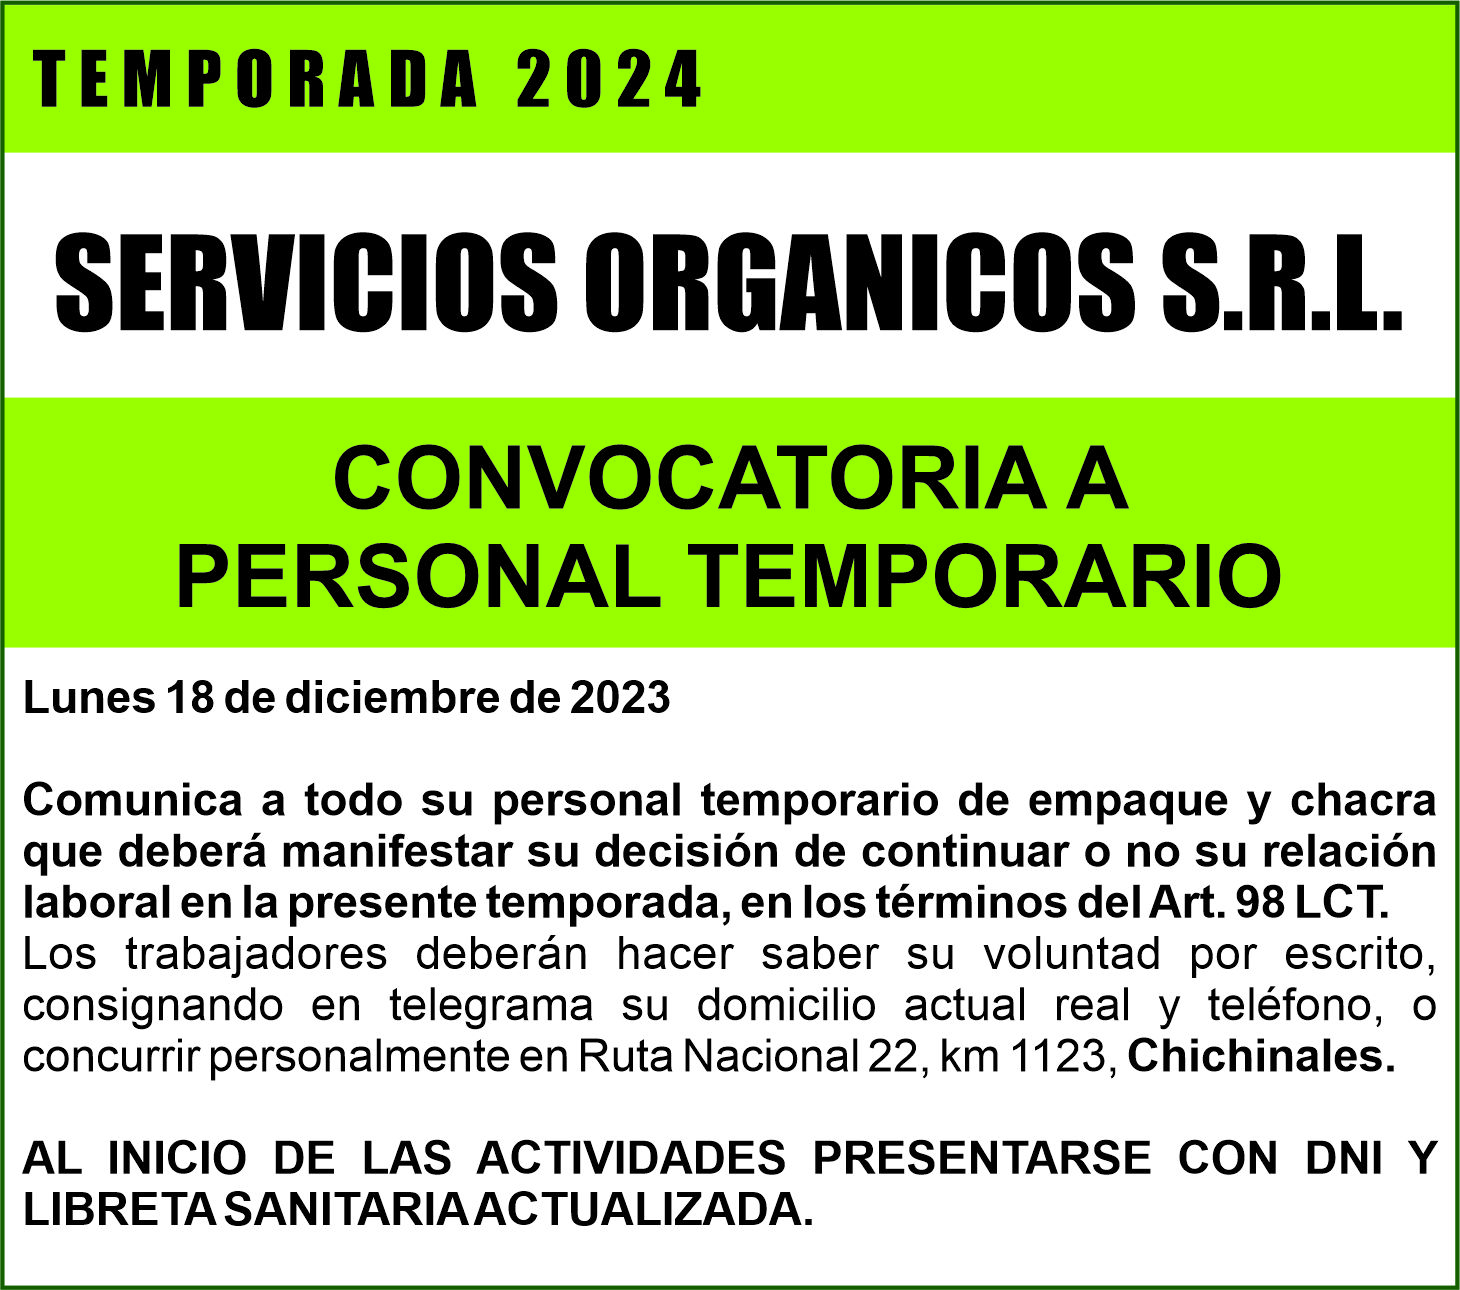 SERVICIOS ORGANICOS S.R.L. convoca a su personal de temporada 2024